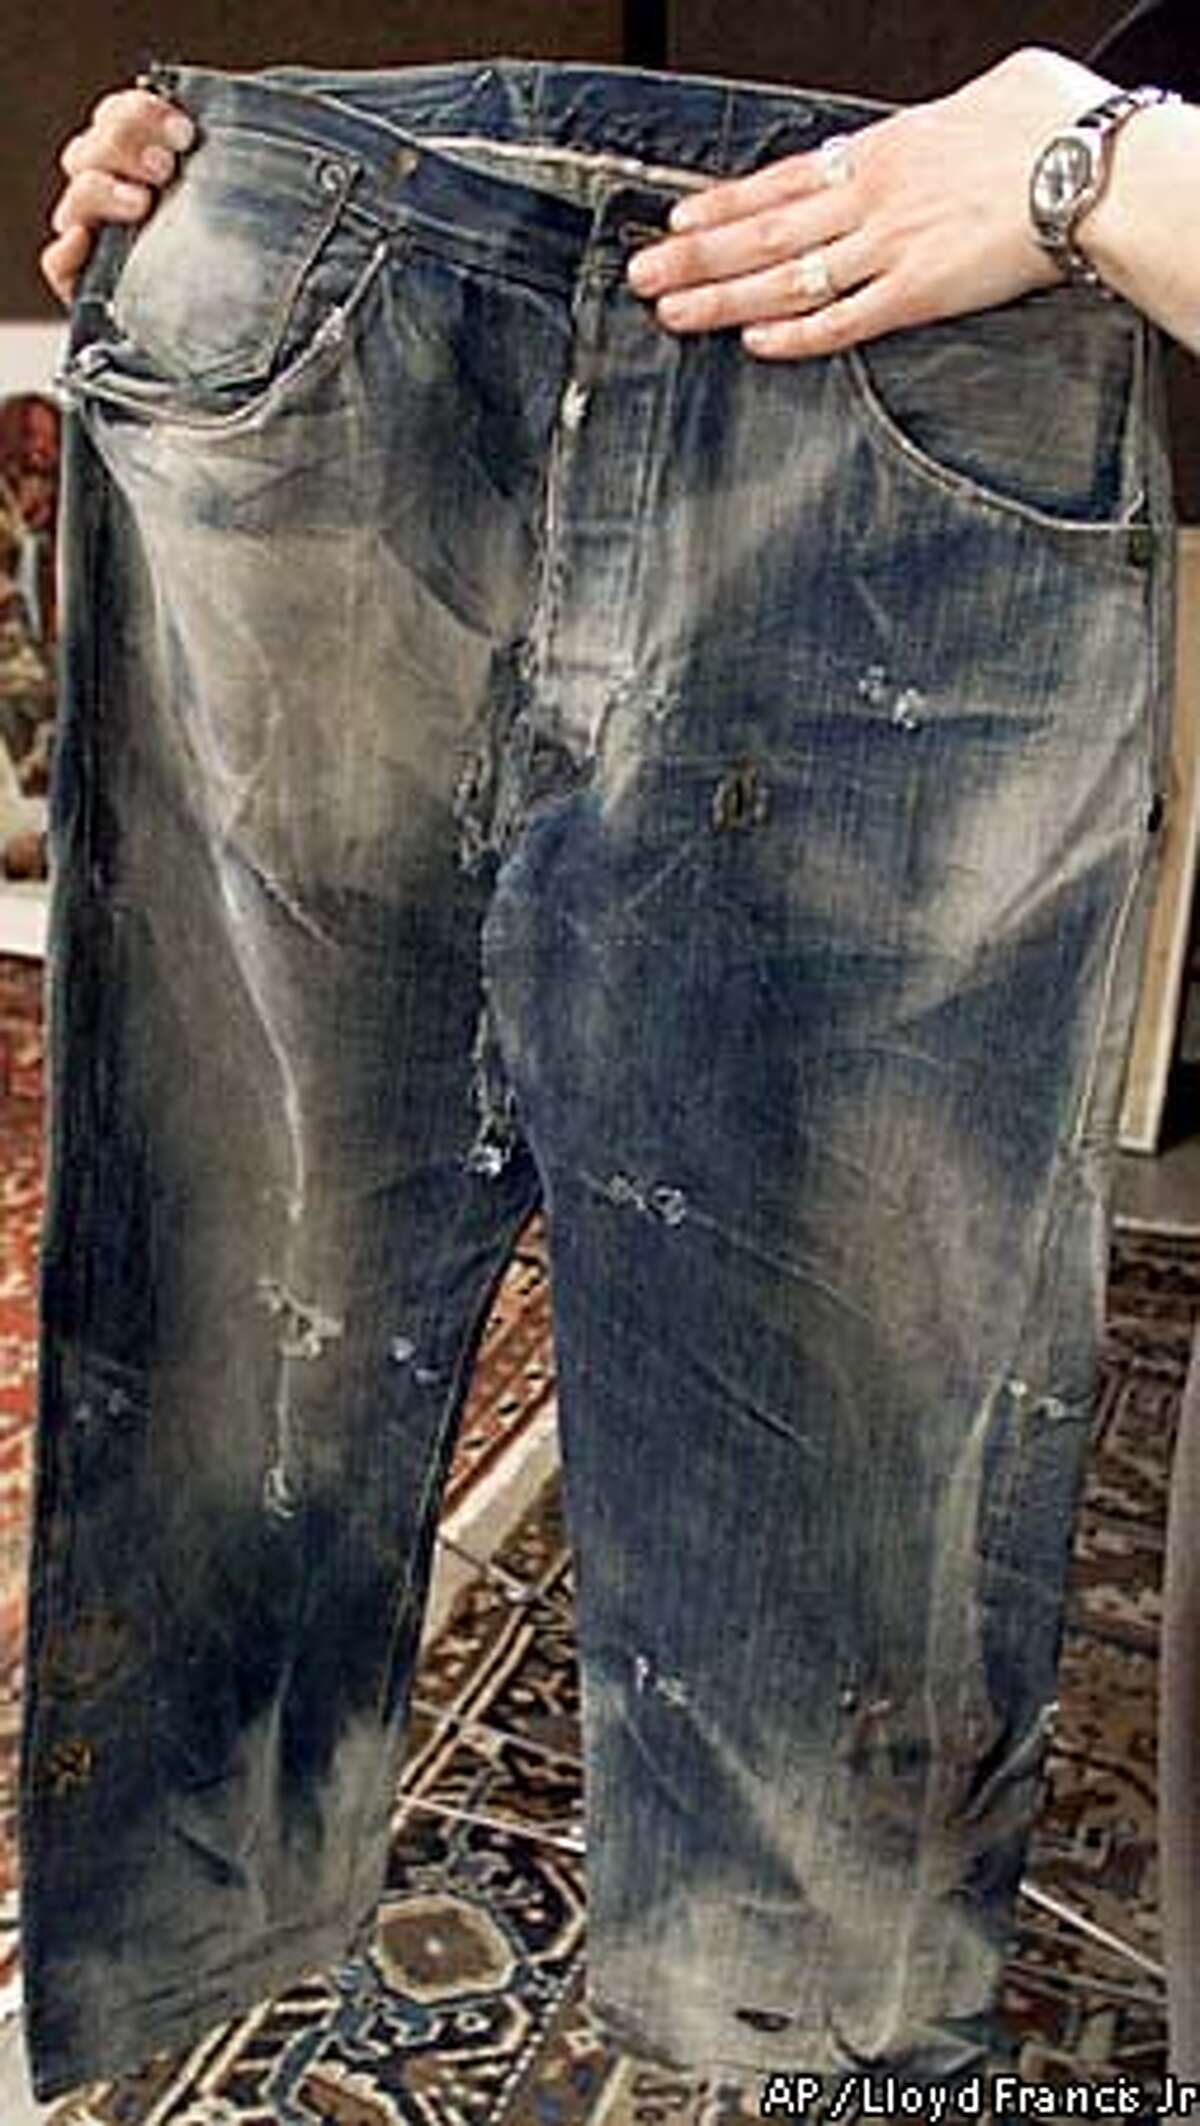 bekræfte sammenholdt Politibetjent $35,000 jeans? / Antique Levi's may be world's oldest / Online bidders to  battle over dirty pair dug up in Nevada